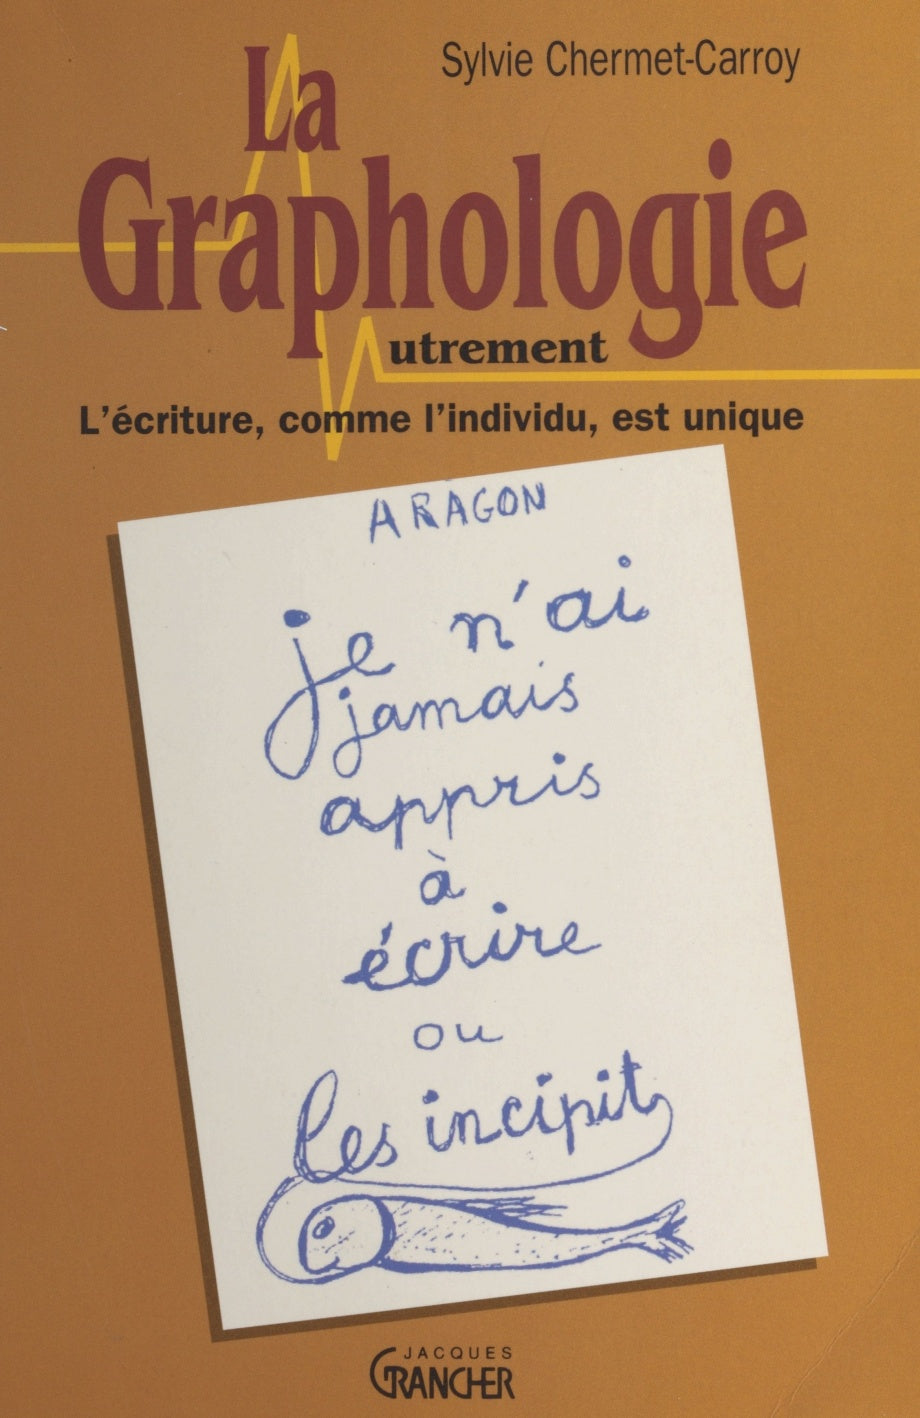 Livre ISBN 2733904310 La graphologie autrement (Sylvie Chermet-Carroy)